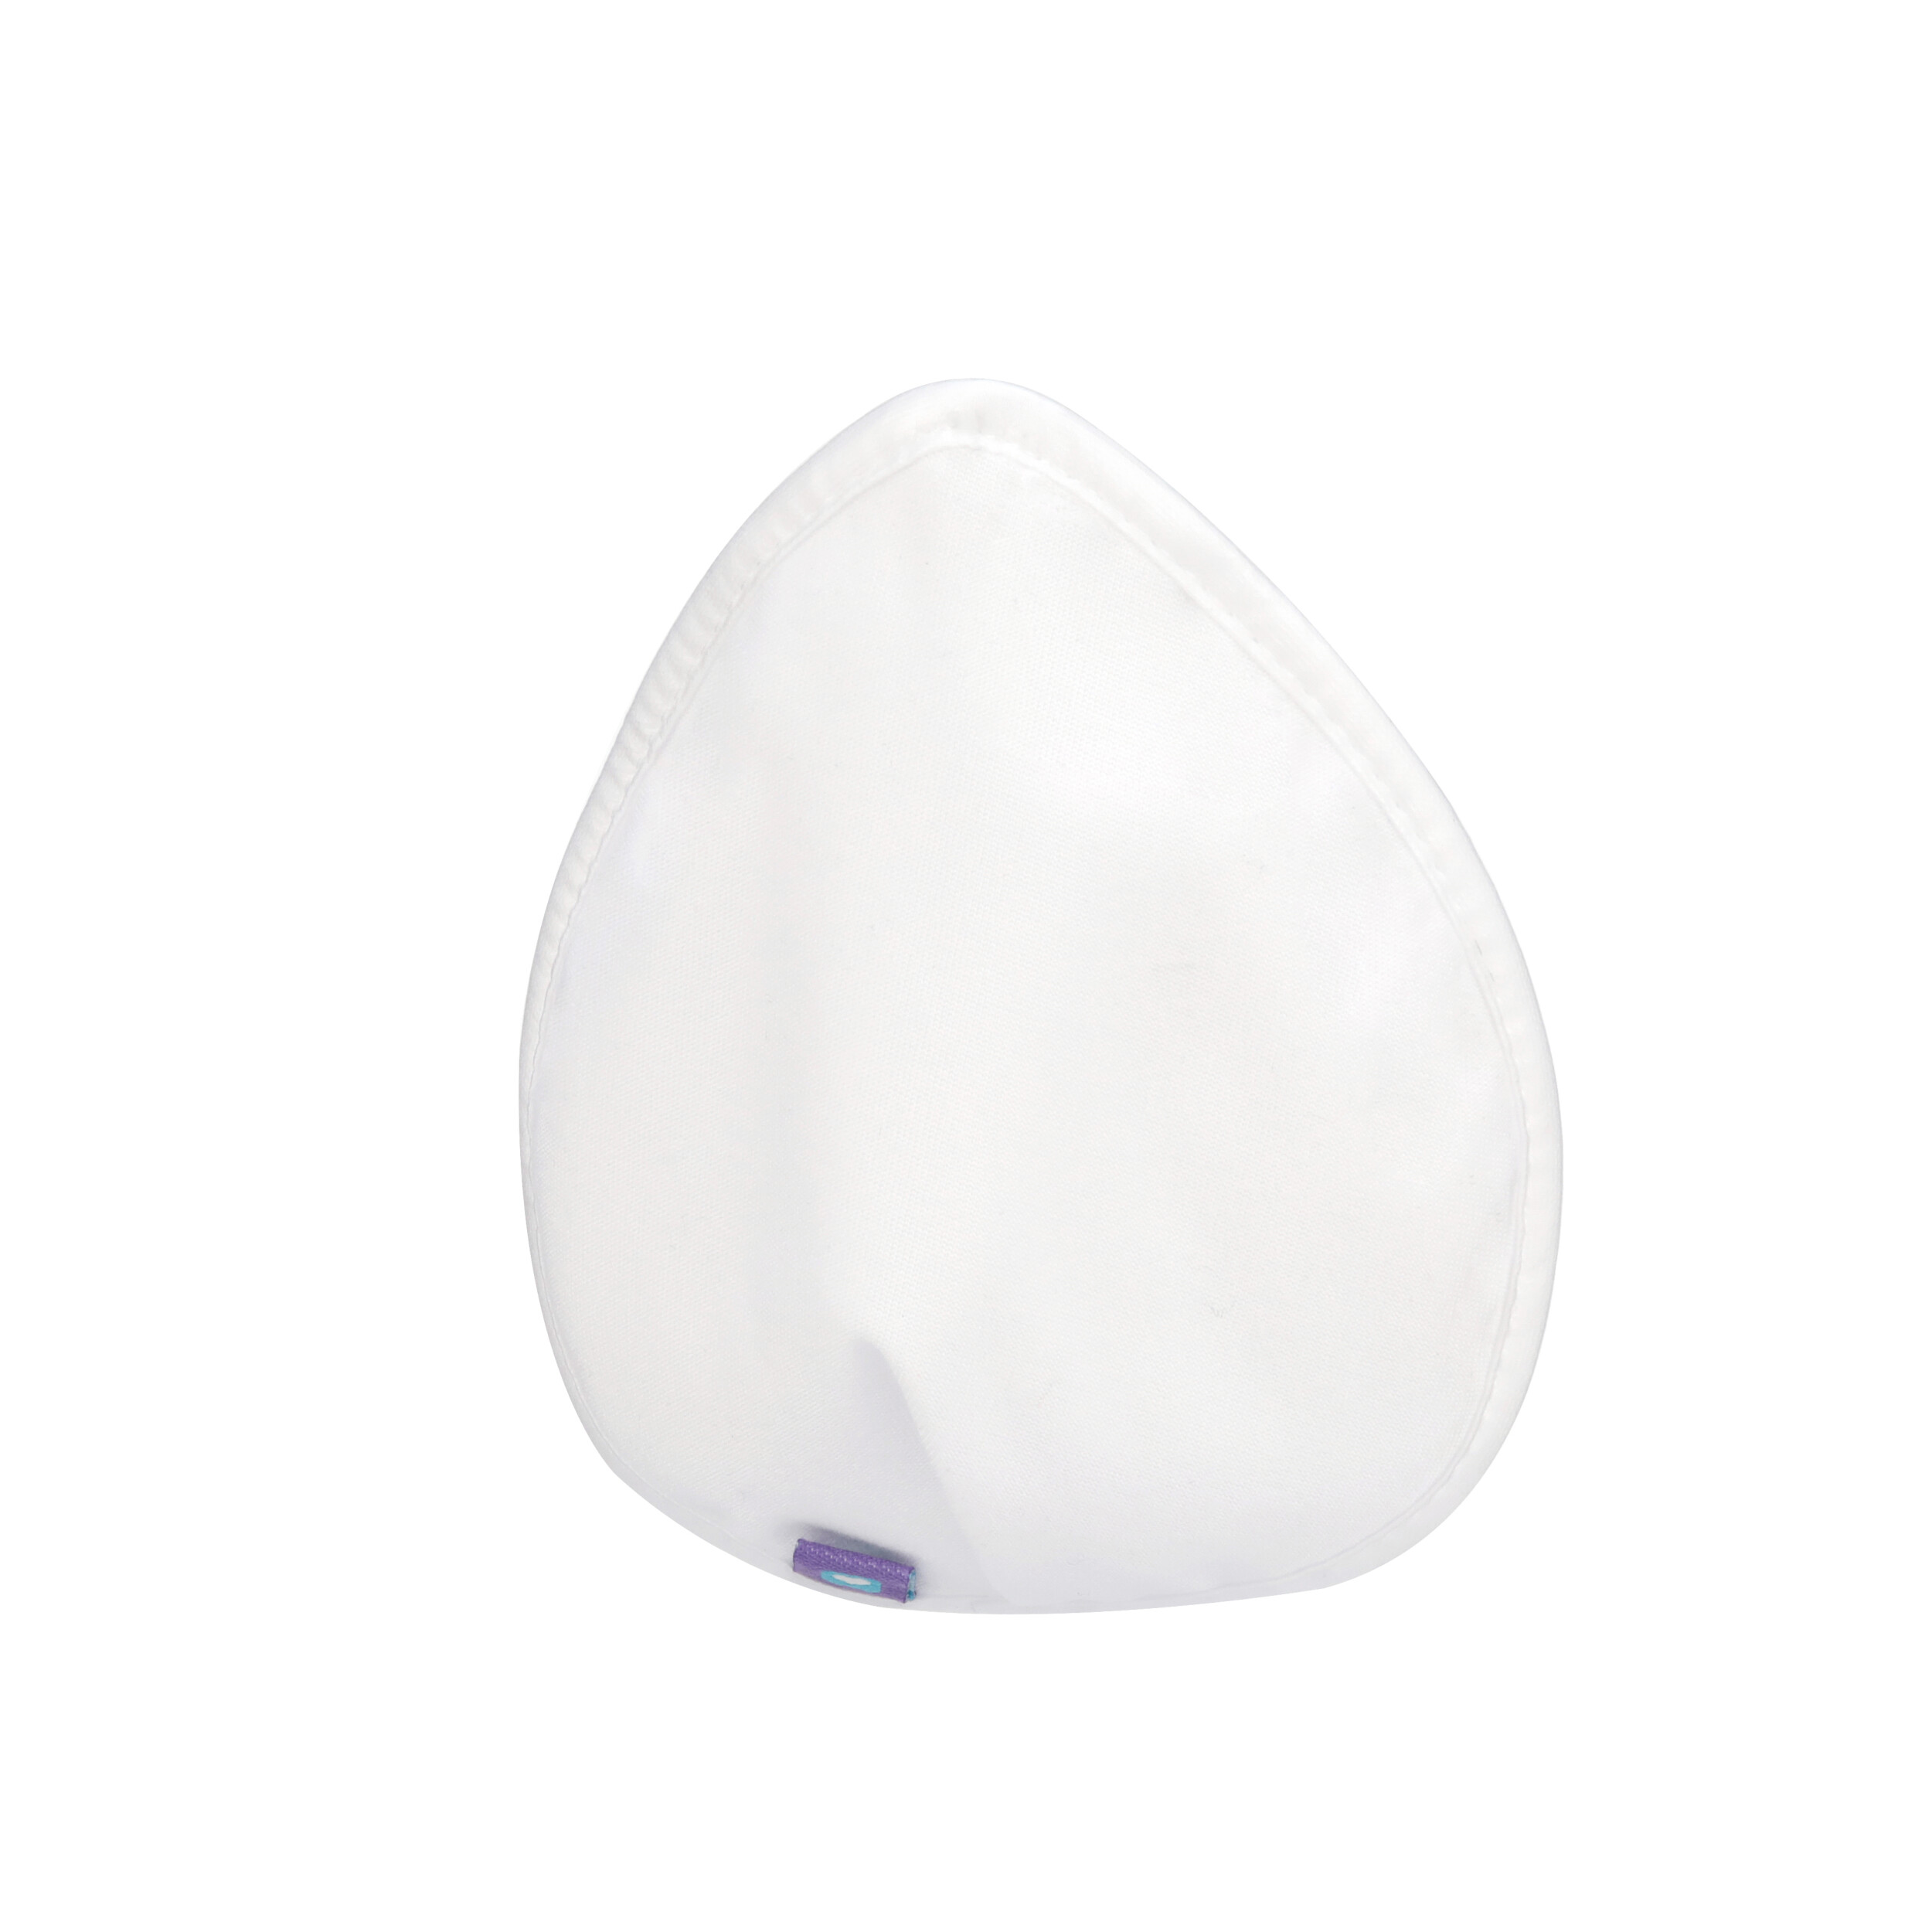 Lansinoh Washable Nursing Pads With Mesh Wash Bag - White - 4ct : Target